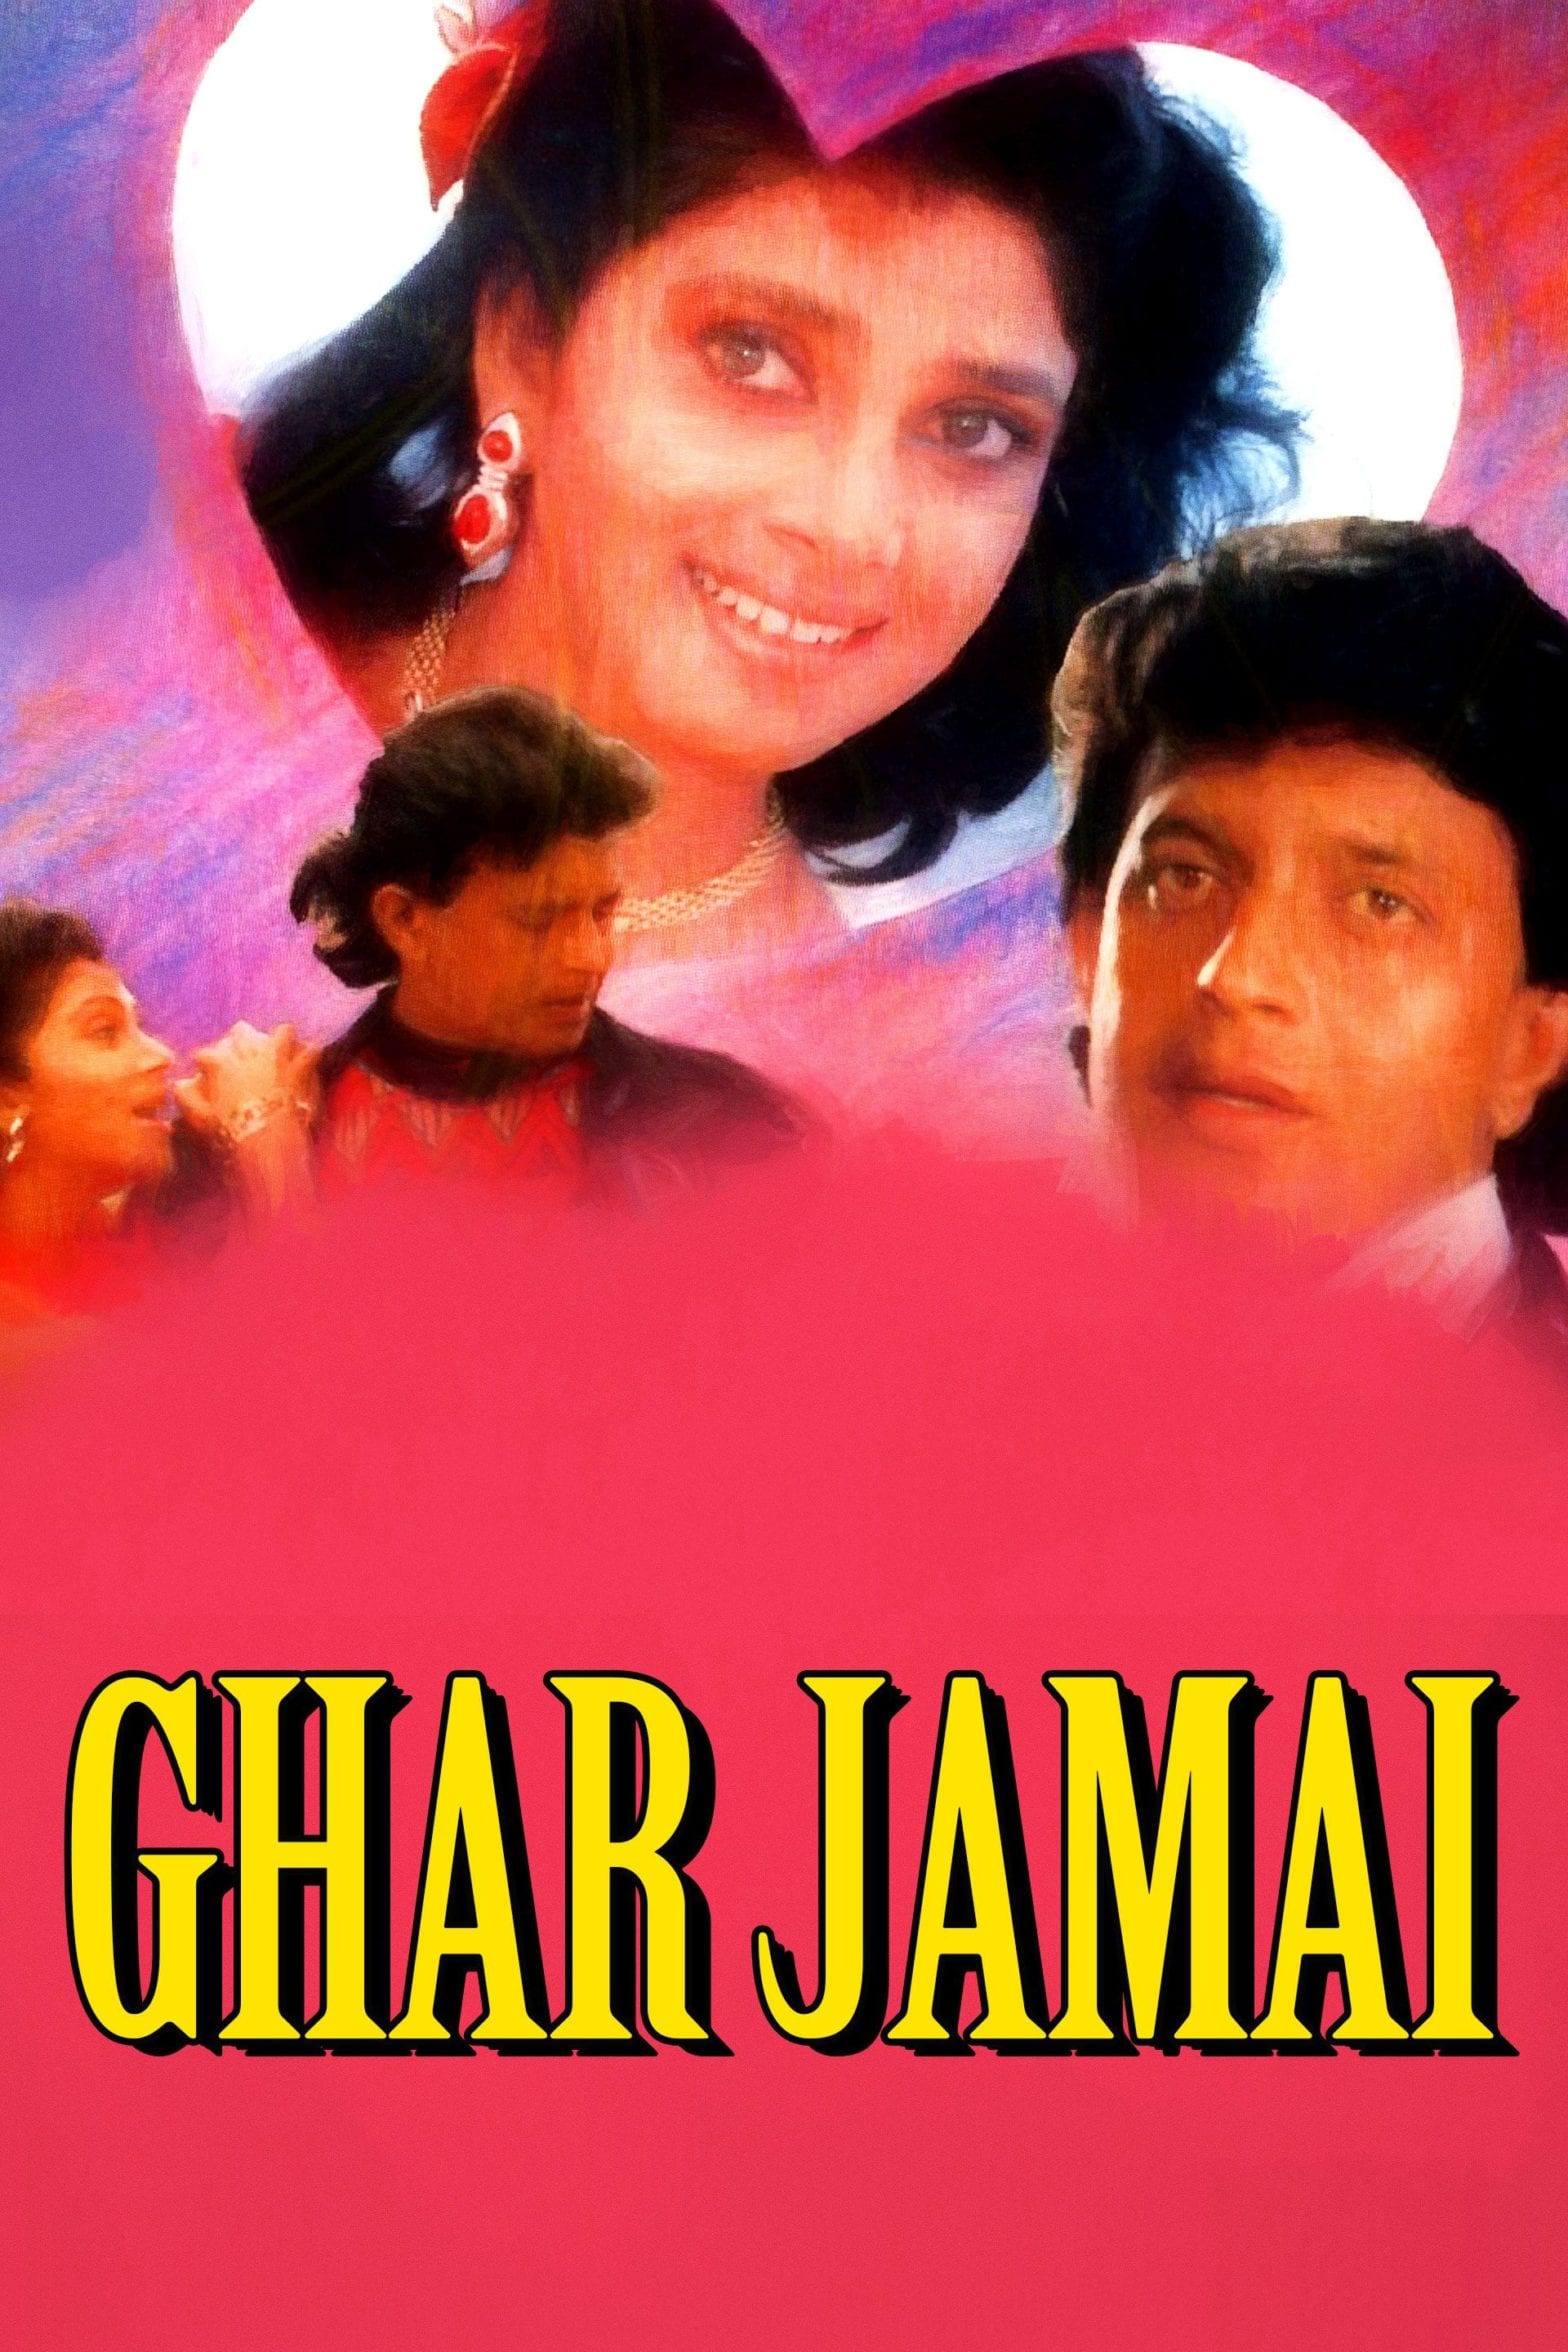 Poster for the movie "Ghar Jamai"